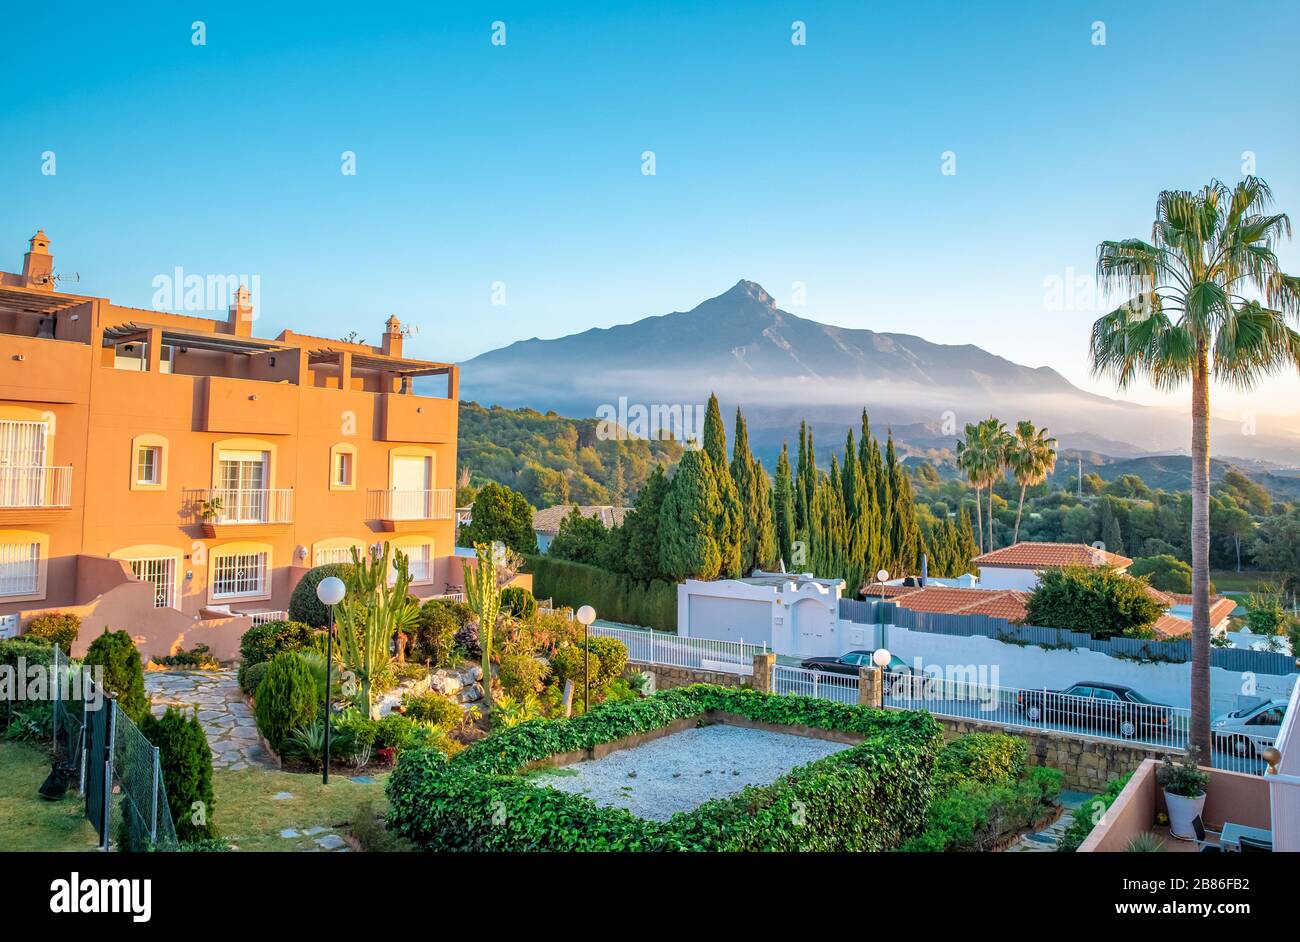 Hotelresort mit schöner Aussicht auf den spanischen Berg La Concha Stockfoto